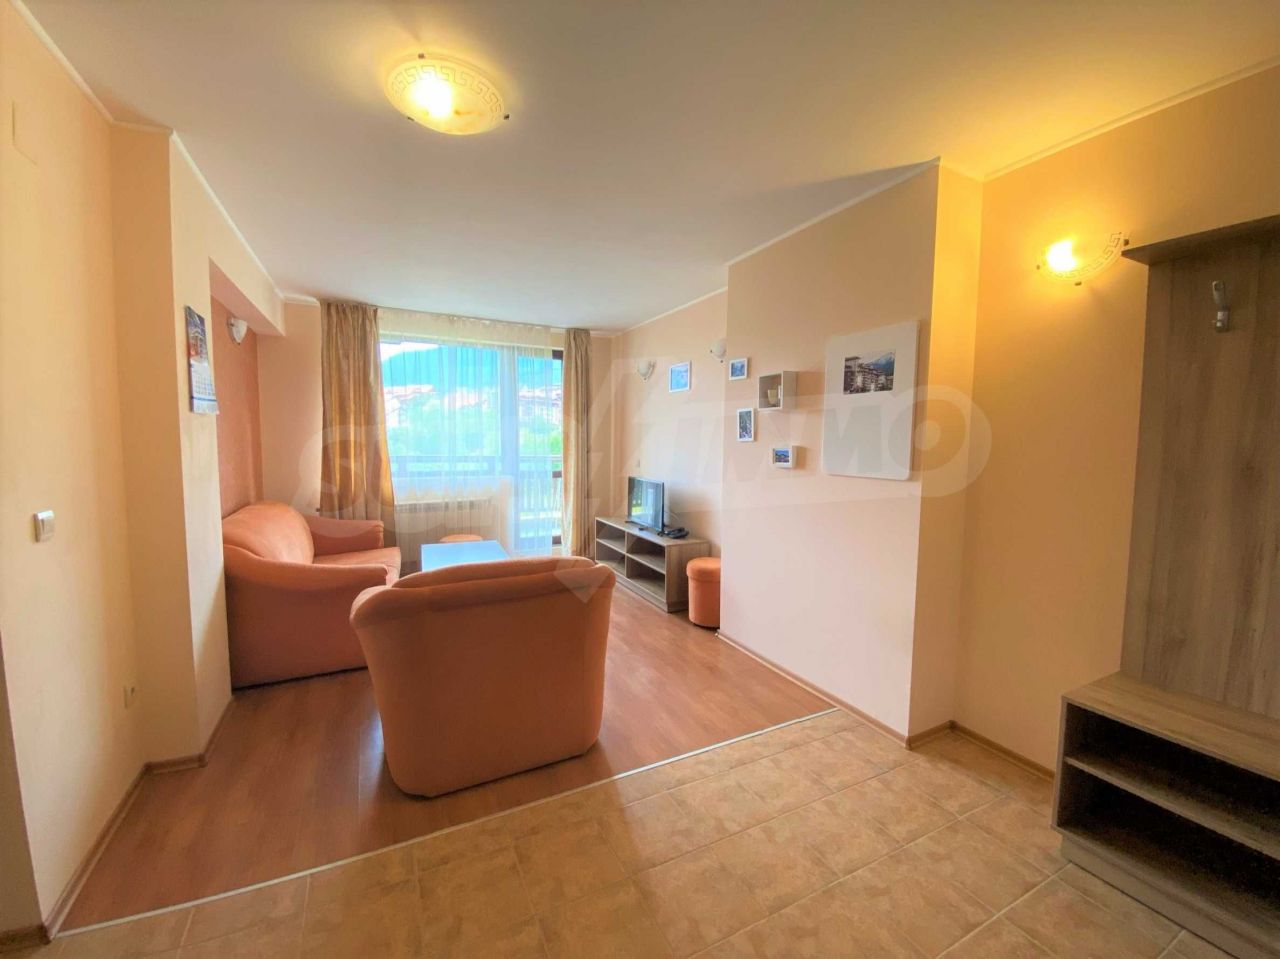 Apartment in Bansko, Bulgaria, 65.7 sq.m - picture 1